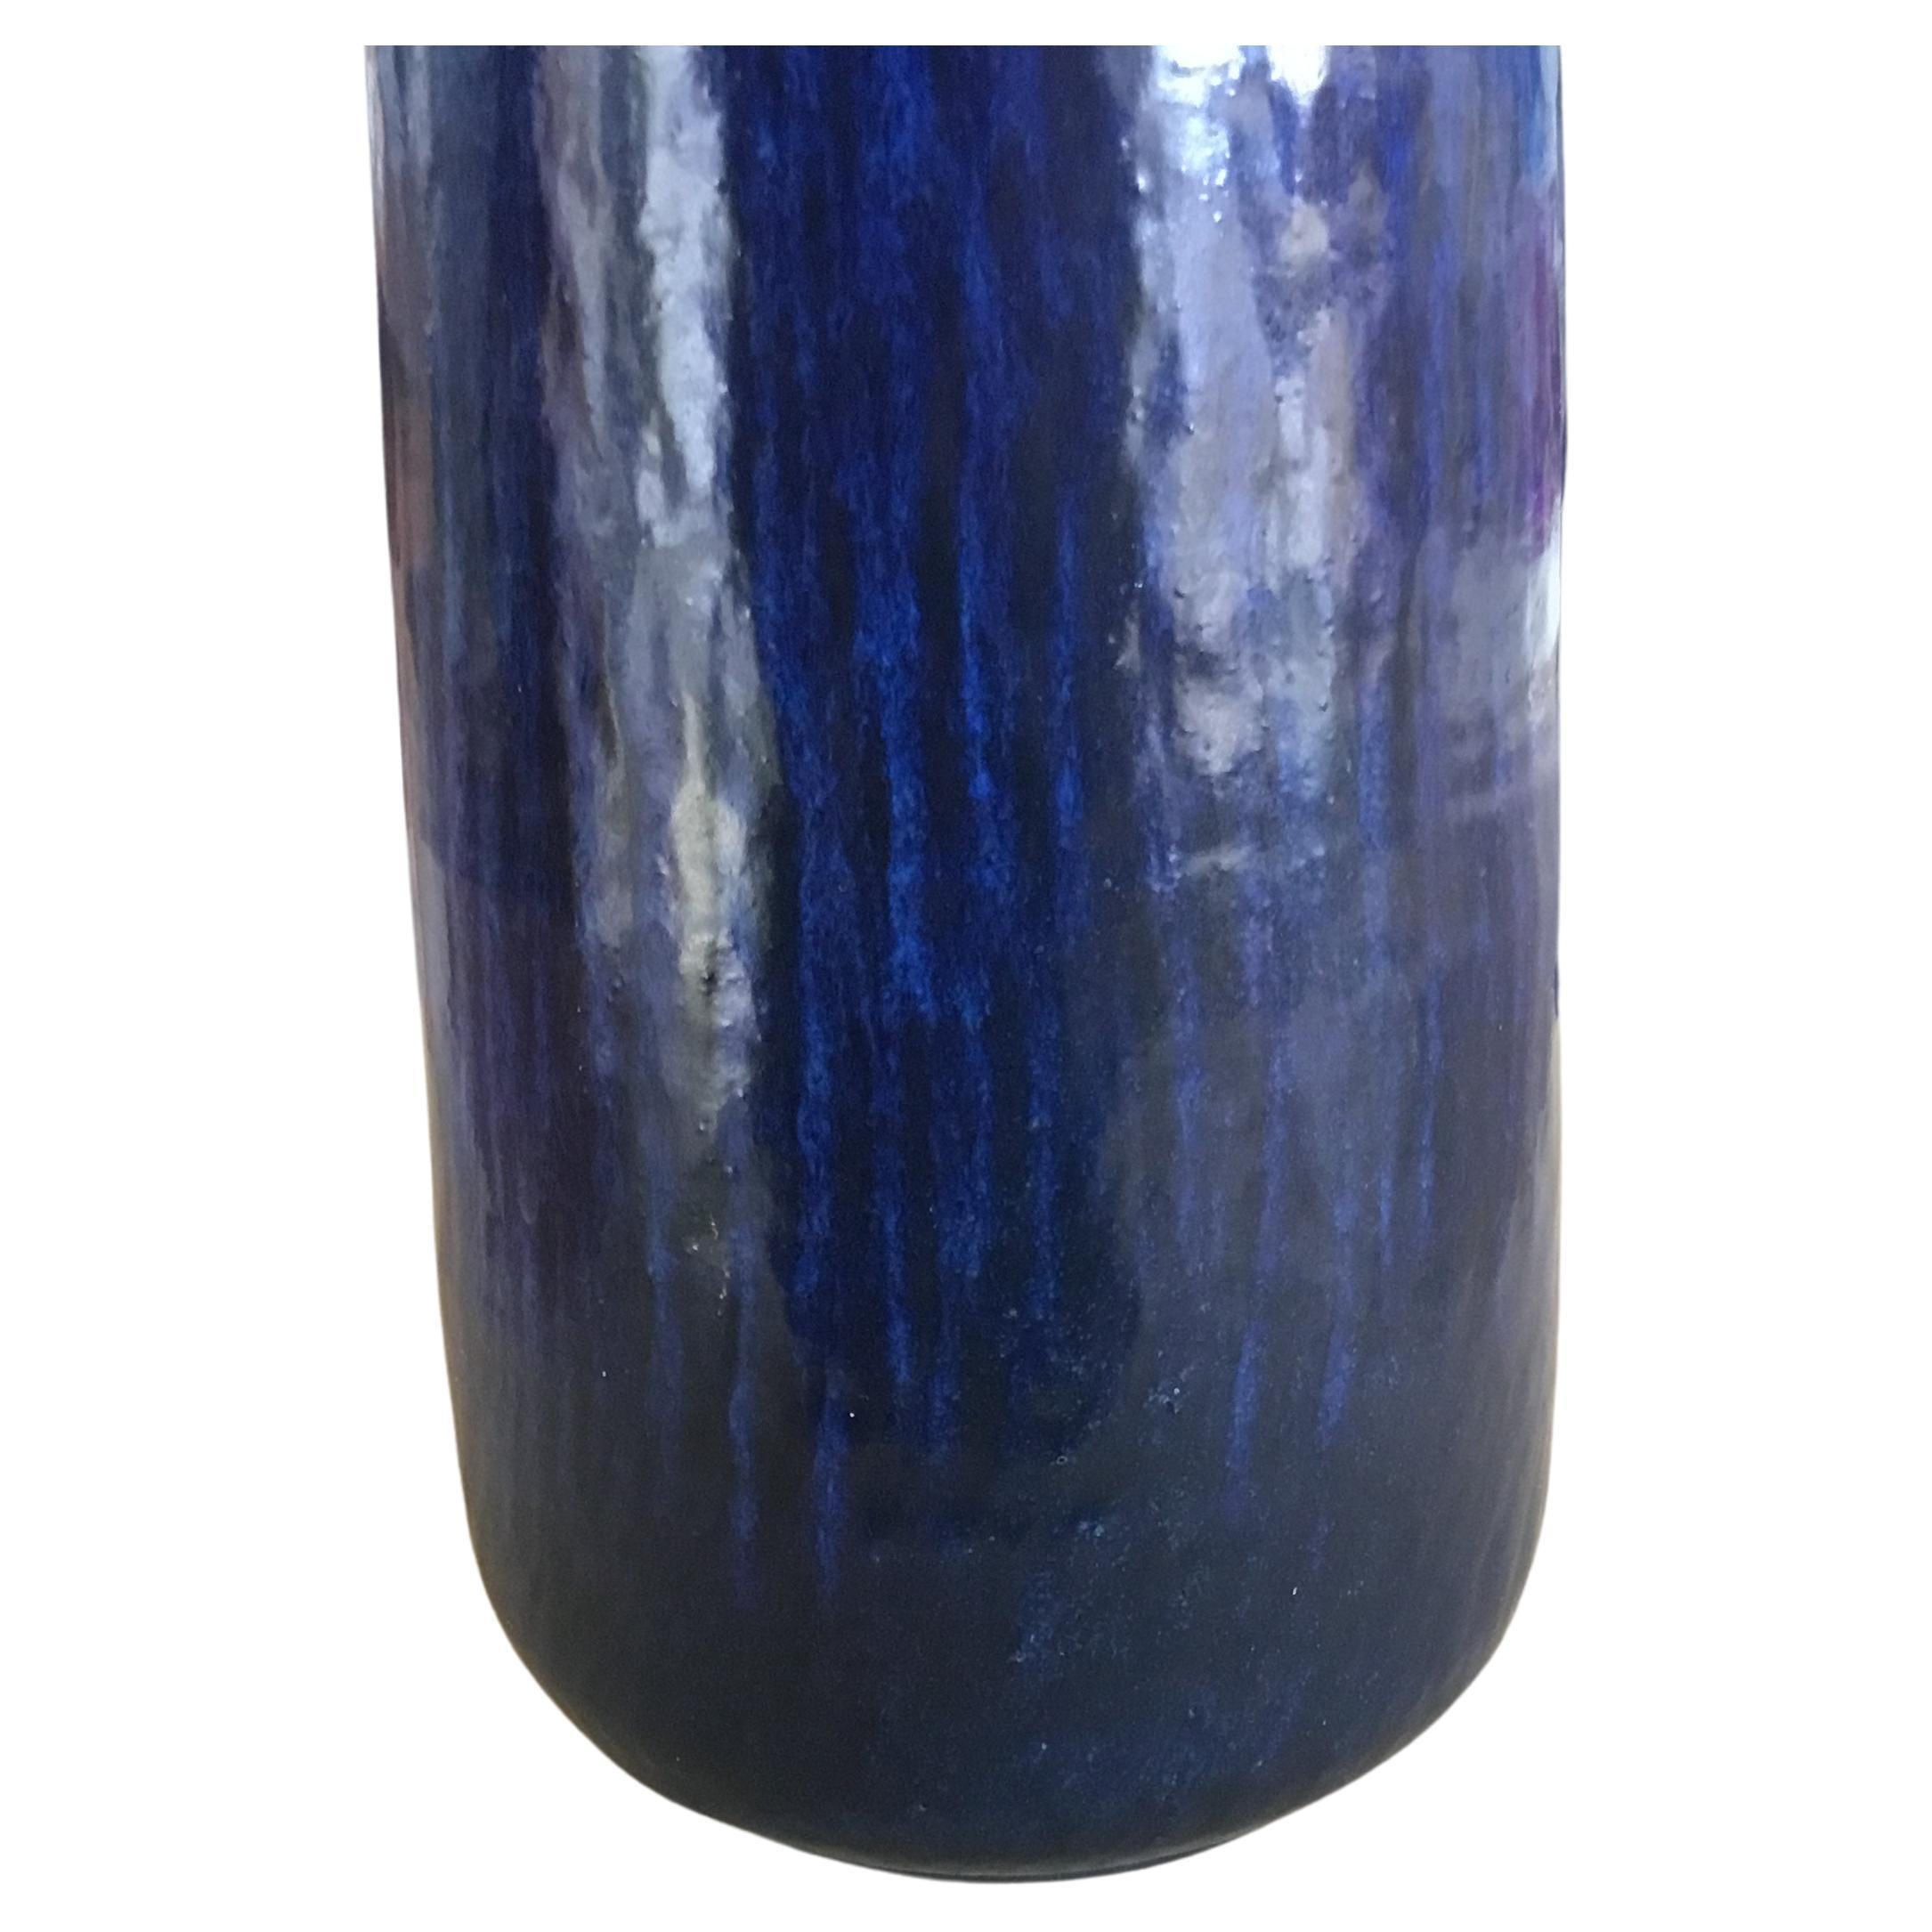 Ce vase très haut et très fin a été conçu par Gunnar Nylund pour Nymølle et produit au Danemark, vers les années 1960. Il est recouvert d'une glaçure bleu marine foncé vive sur un motif rayonnant. Mesure : 17.7